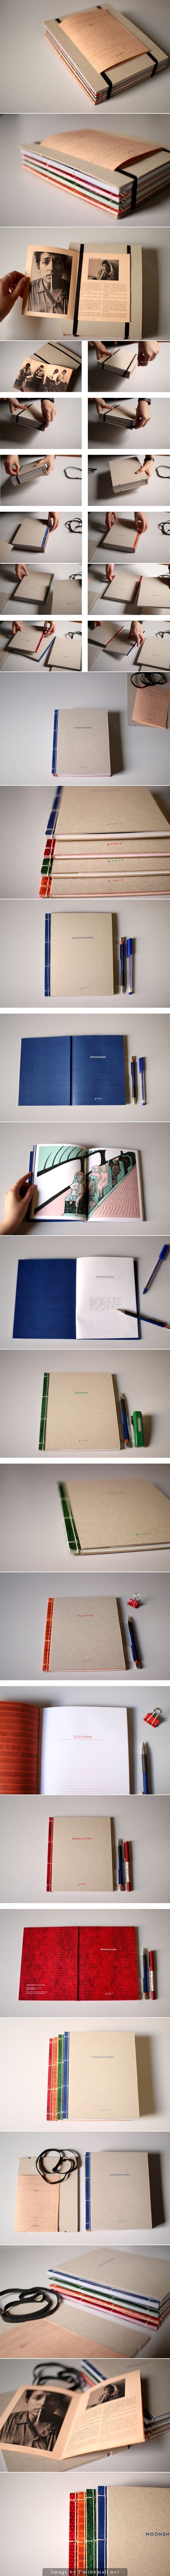 设计思考 · 别人的书籍装帧排版设计 